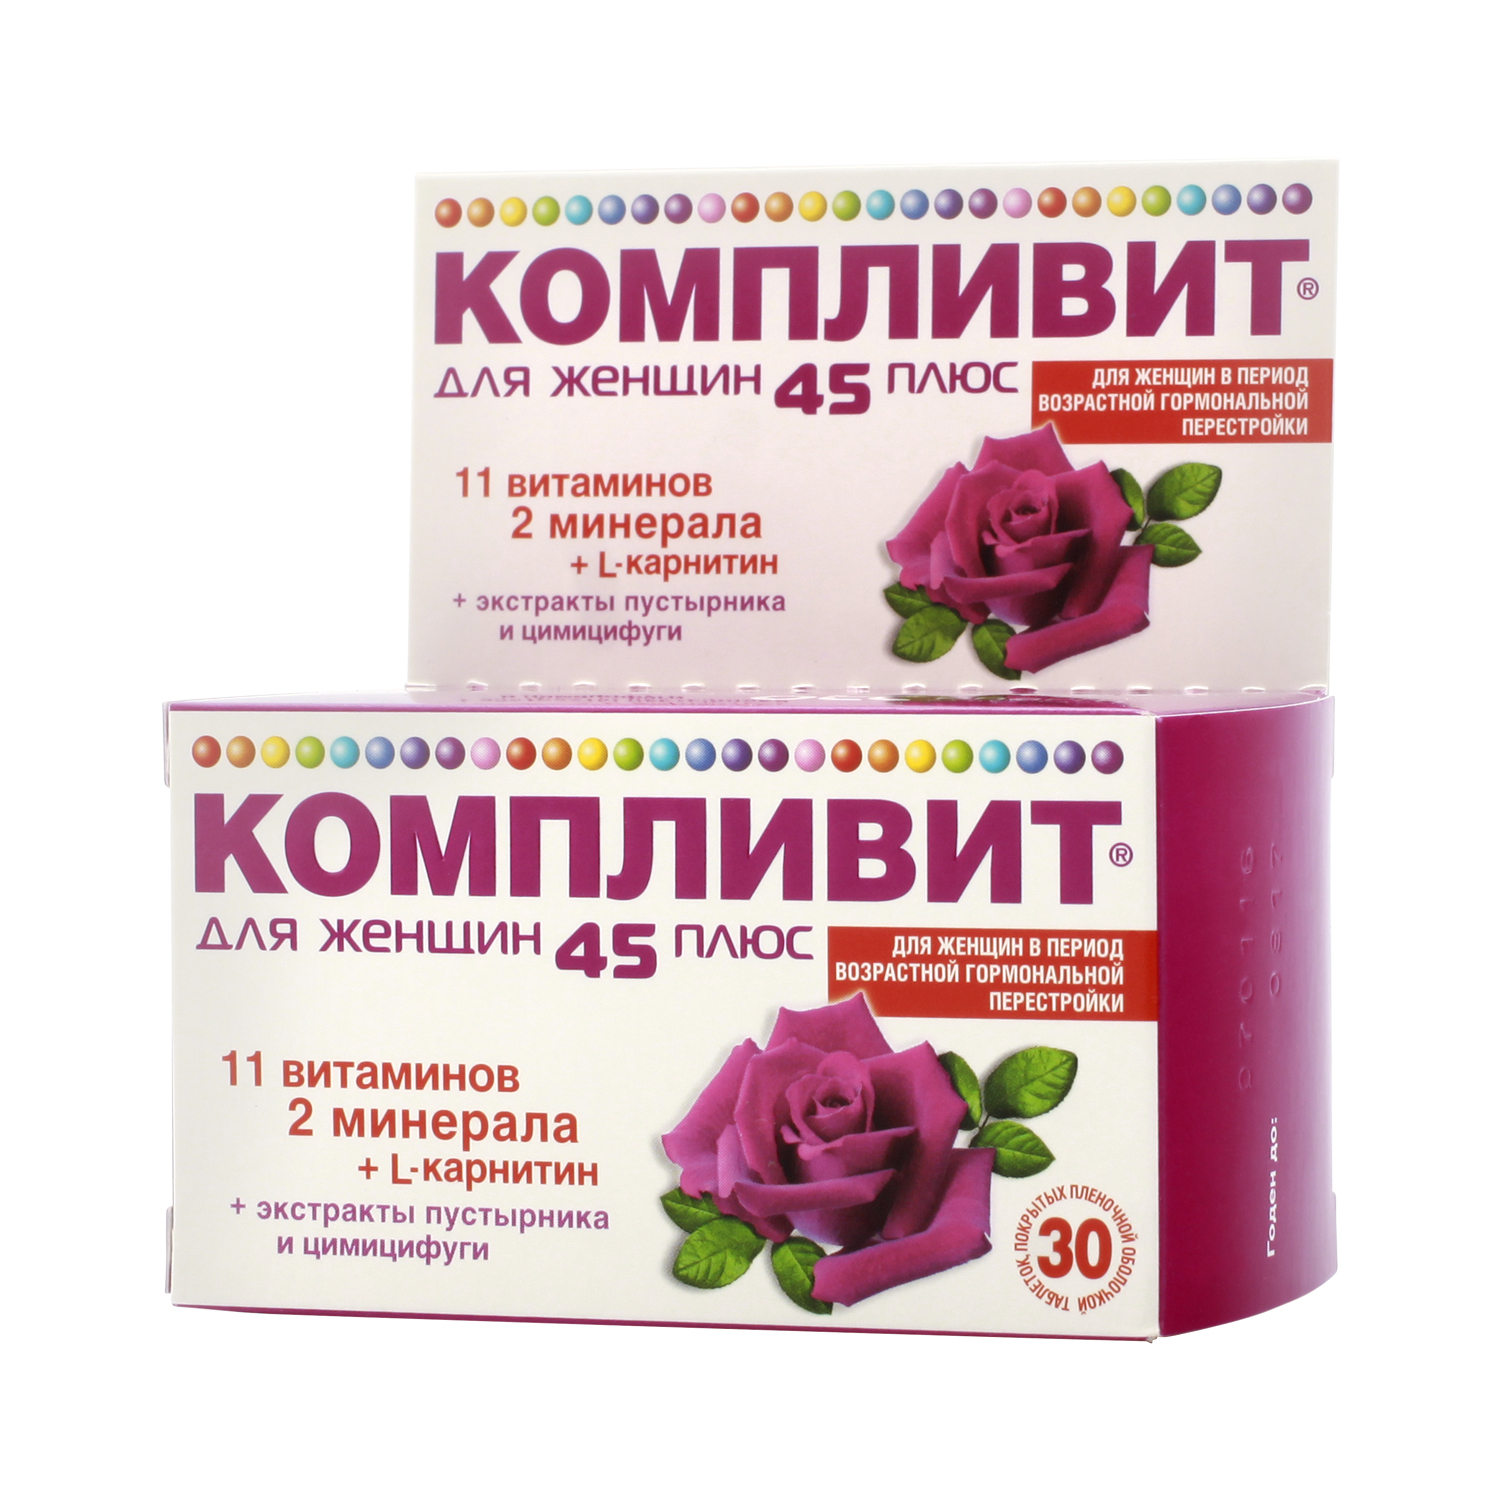 Компливит для женщин 45 плюс таблетки 30 шт  в Санкт-Петербурге .